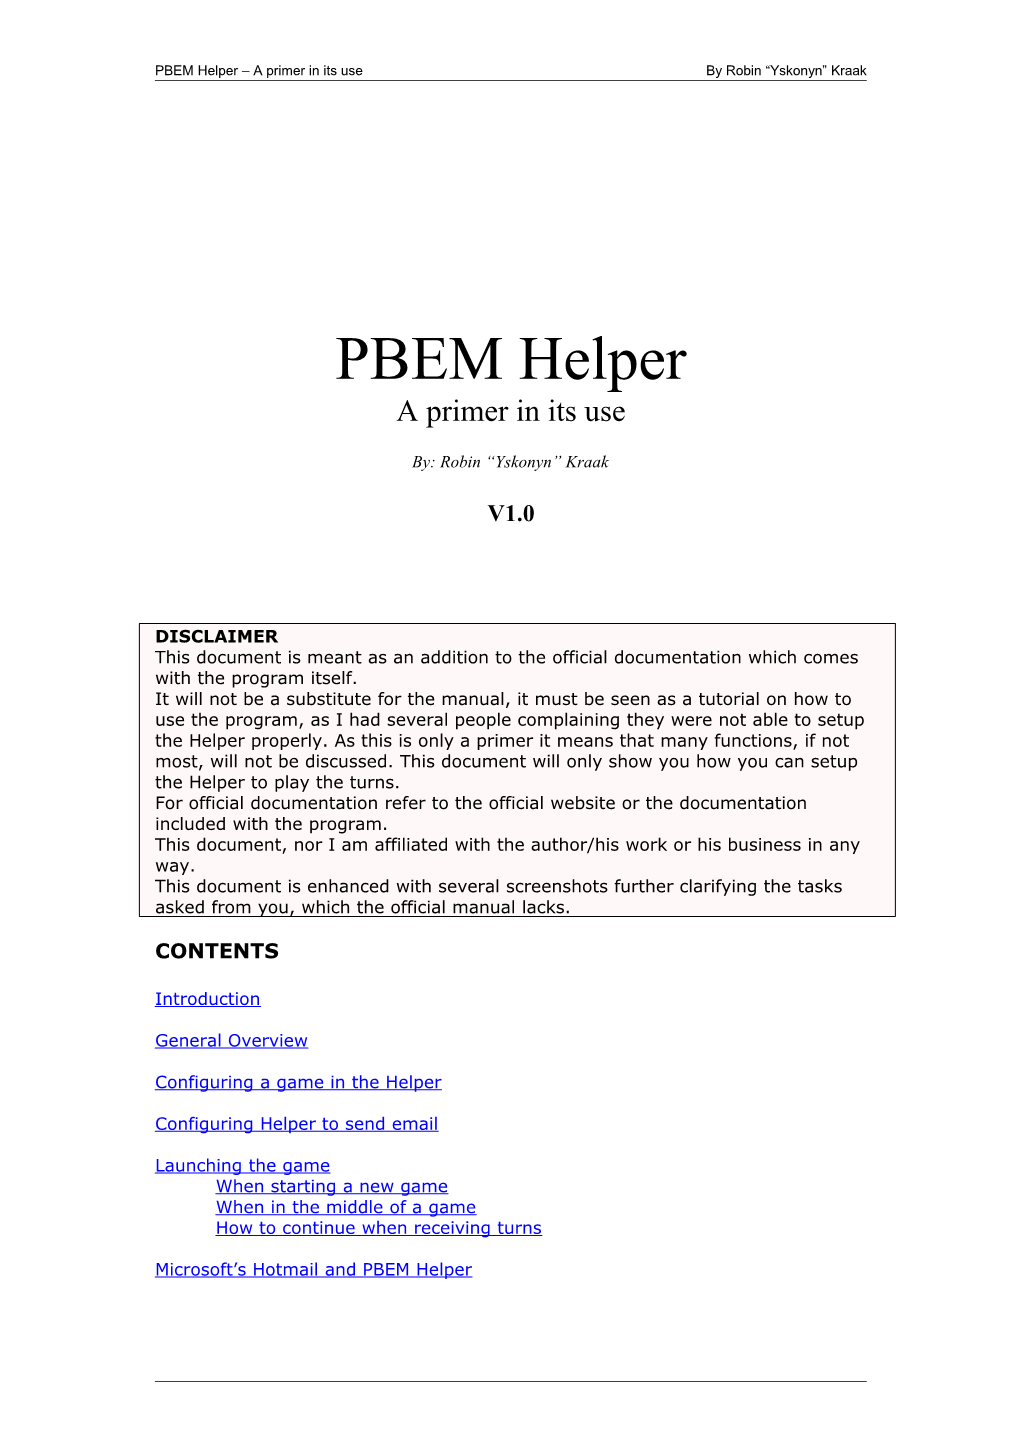 PBEM Helper a Primer in Its Useby Robin Yskonyn Kraak